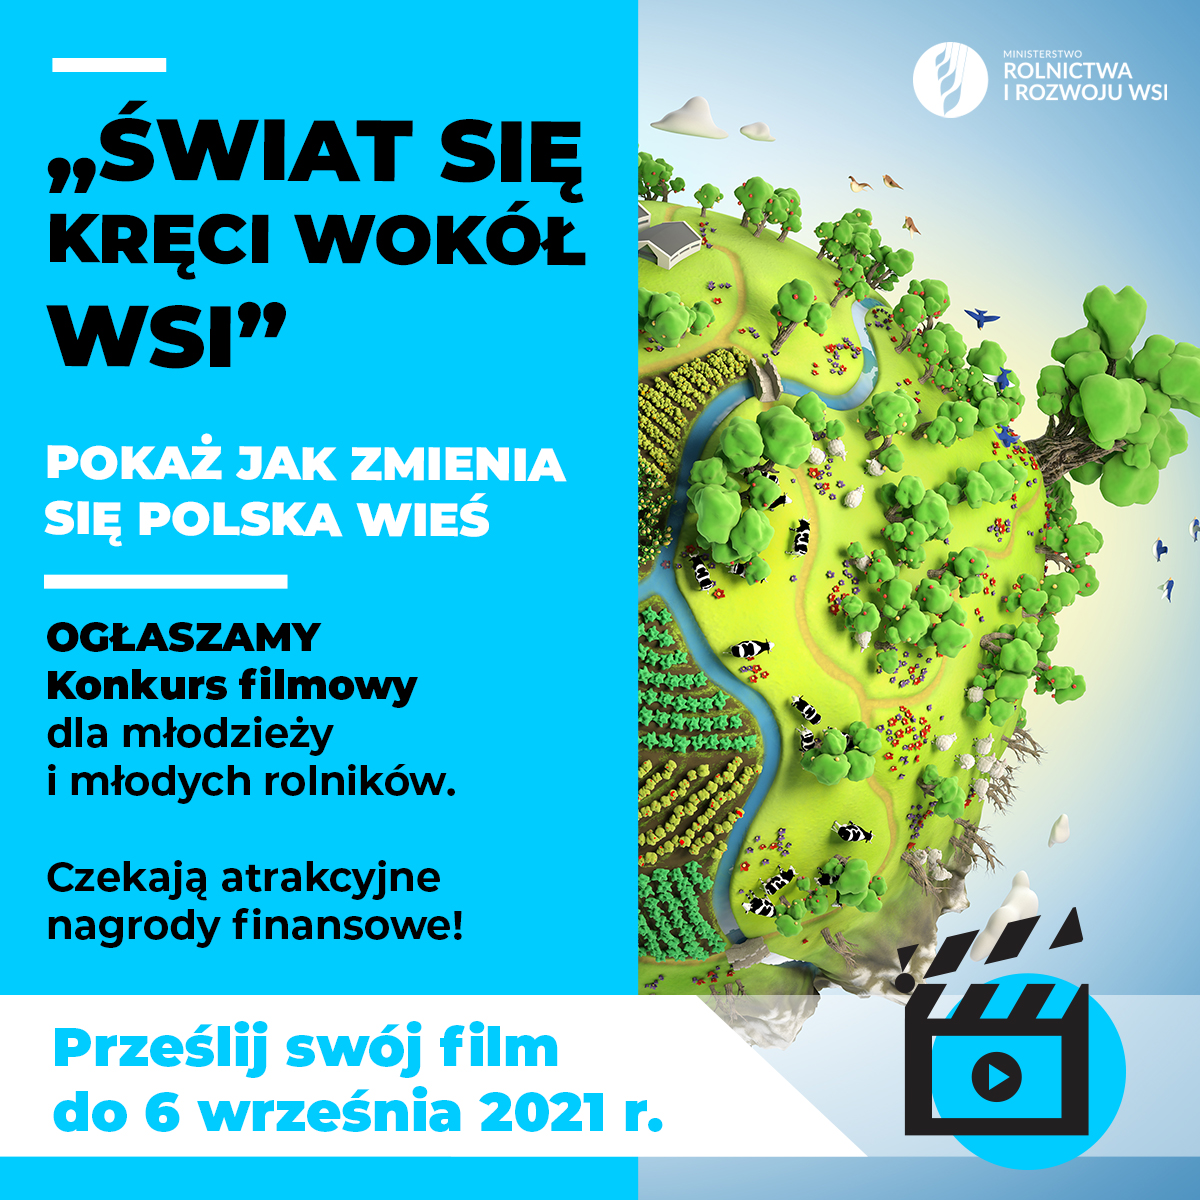 Plakat informacyjny o konkursie filmowym "Świat się kręci wokół wsi"